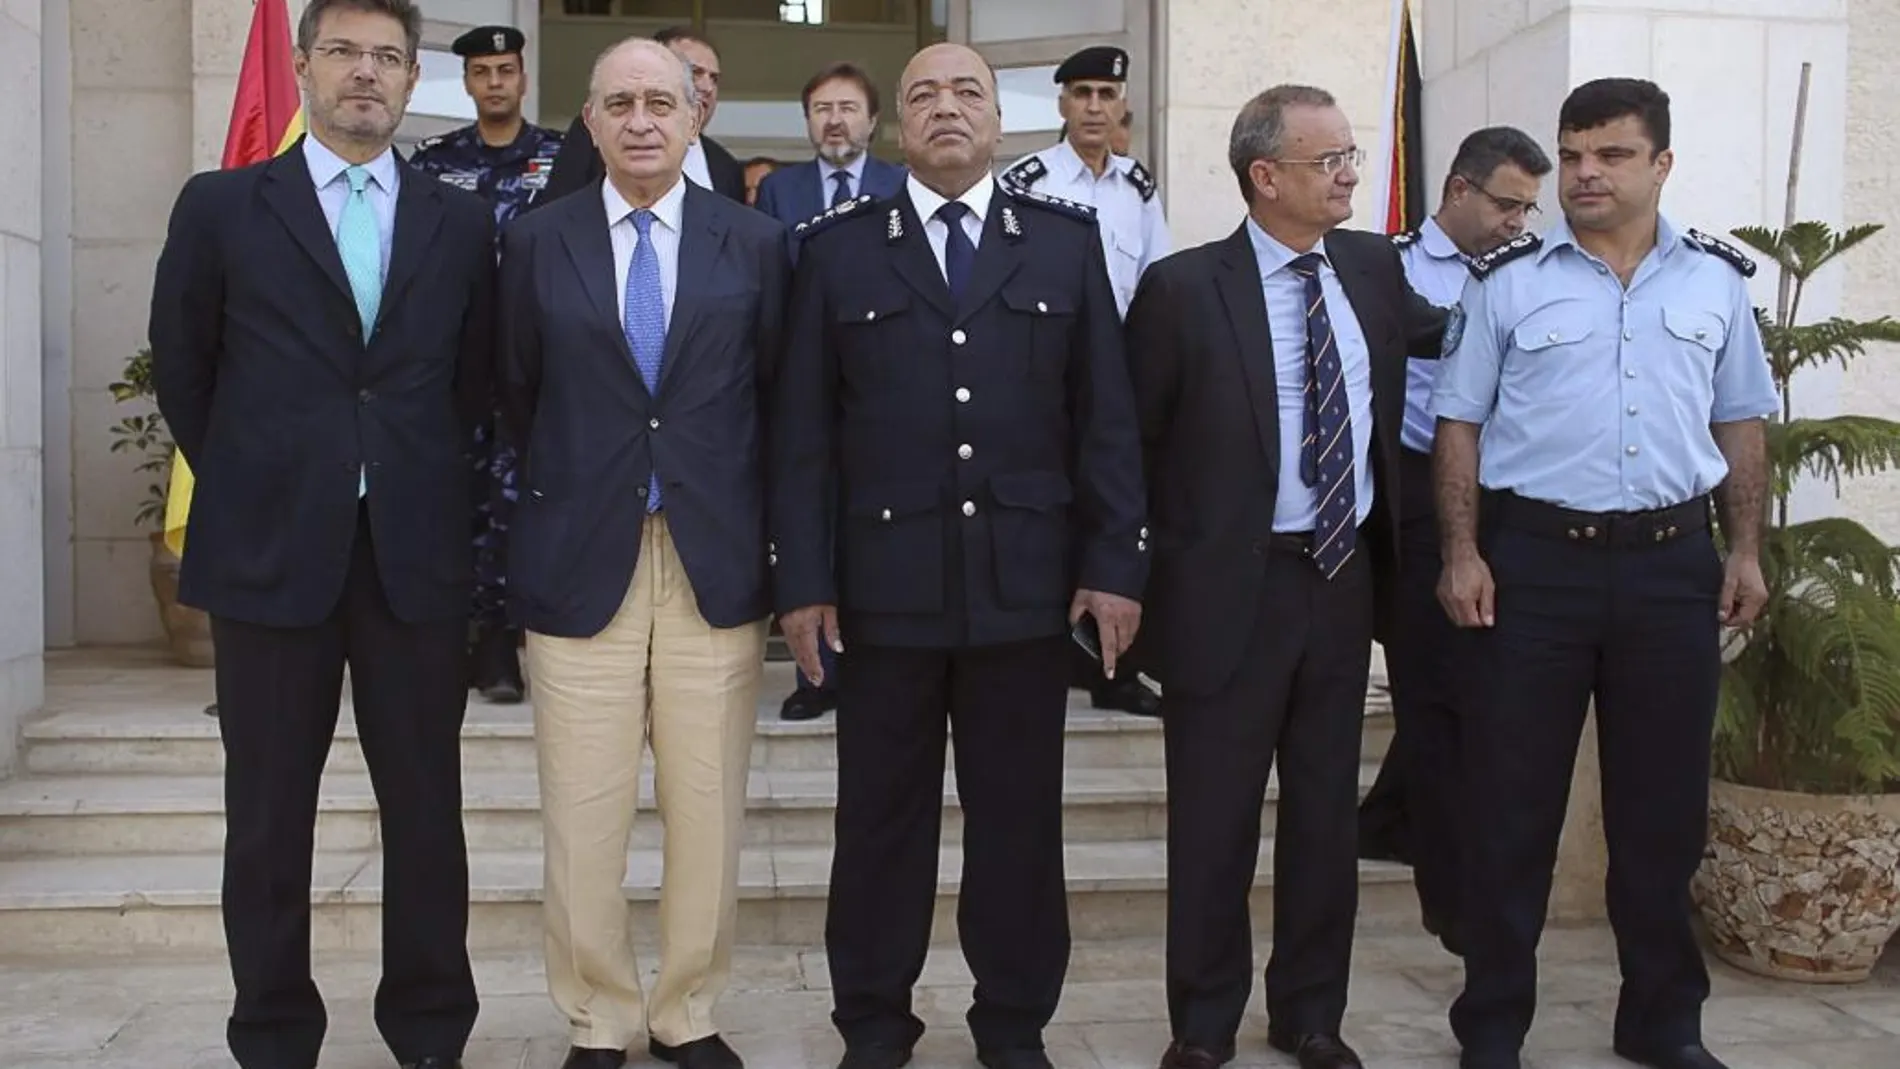 Los ministros españoles de Interior y Justicia, Jorge Fernández Díaz (2i) y Rafael Catalá (i) se encuentran de visita oficial a Israel y Palestina